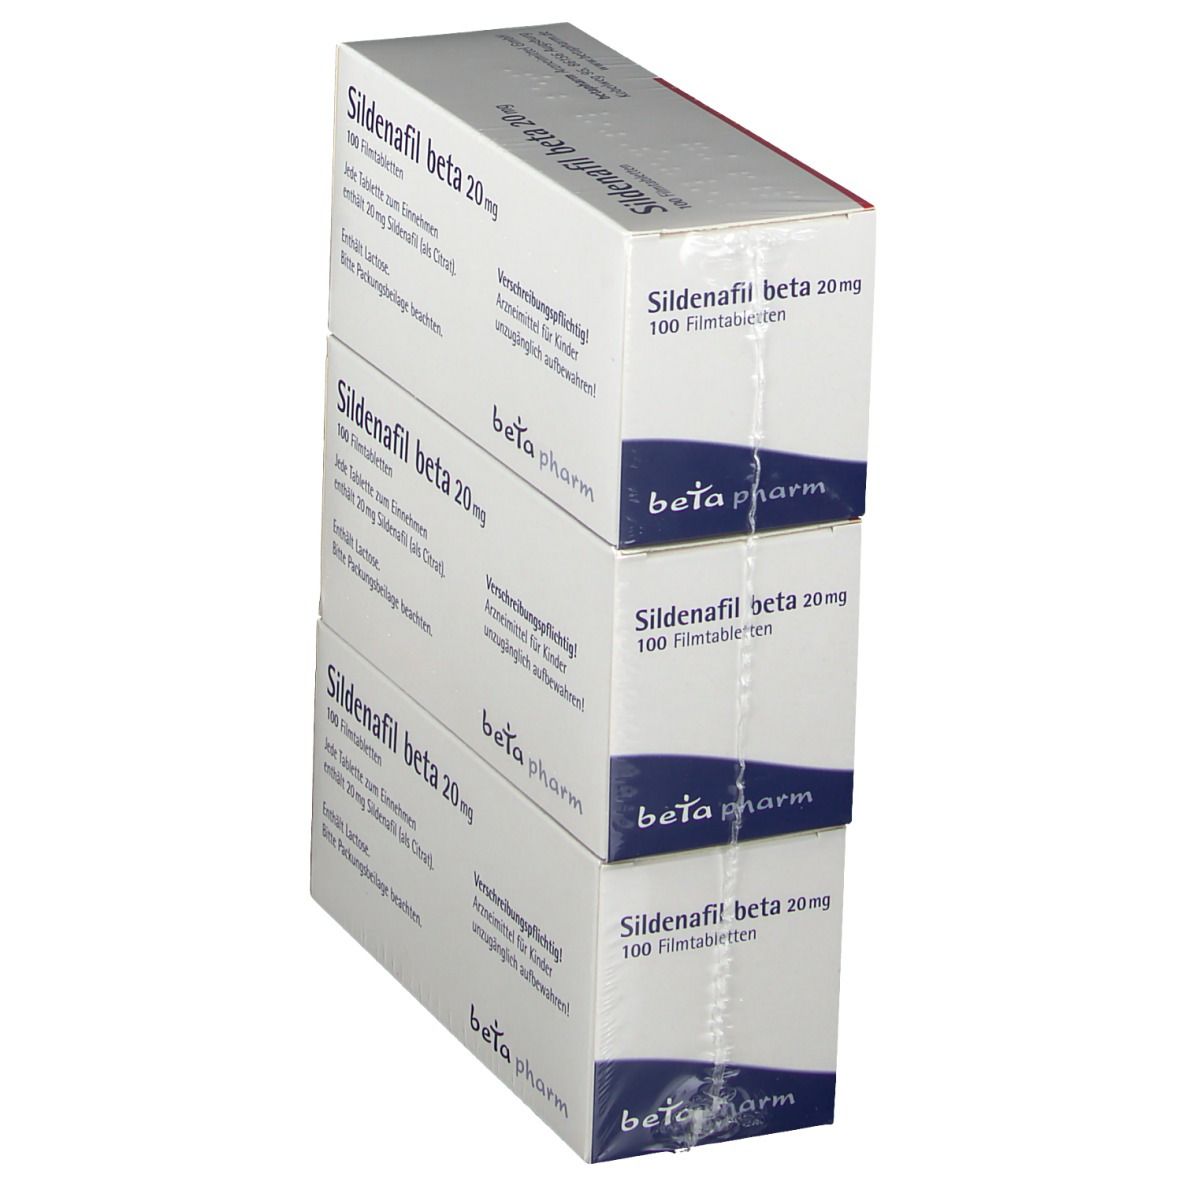 Sildenafil beta 20 mg